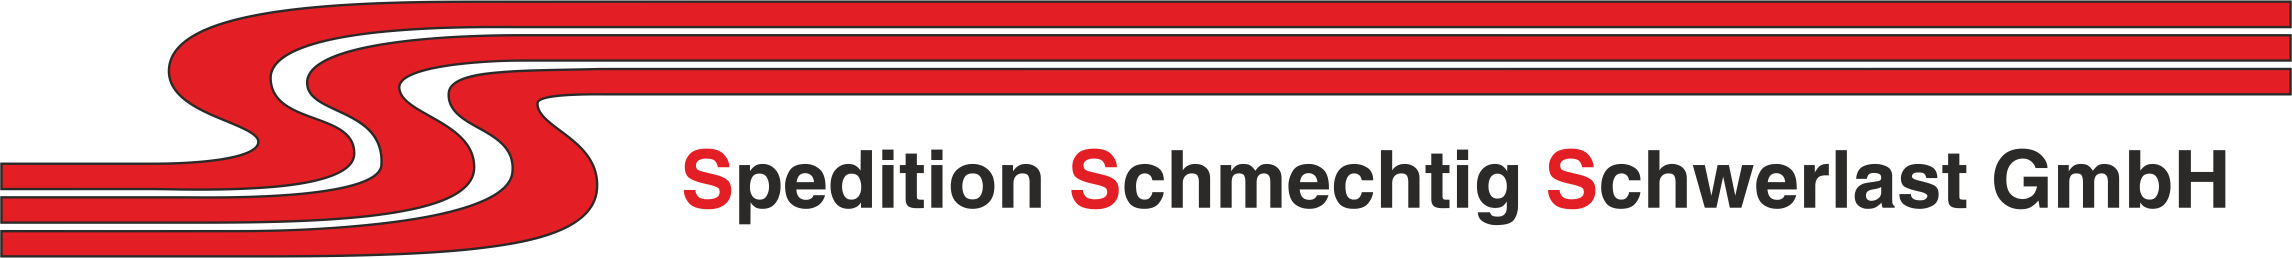 Spedition Schmechtig Schwerlast GmbH